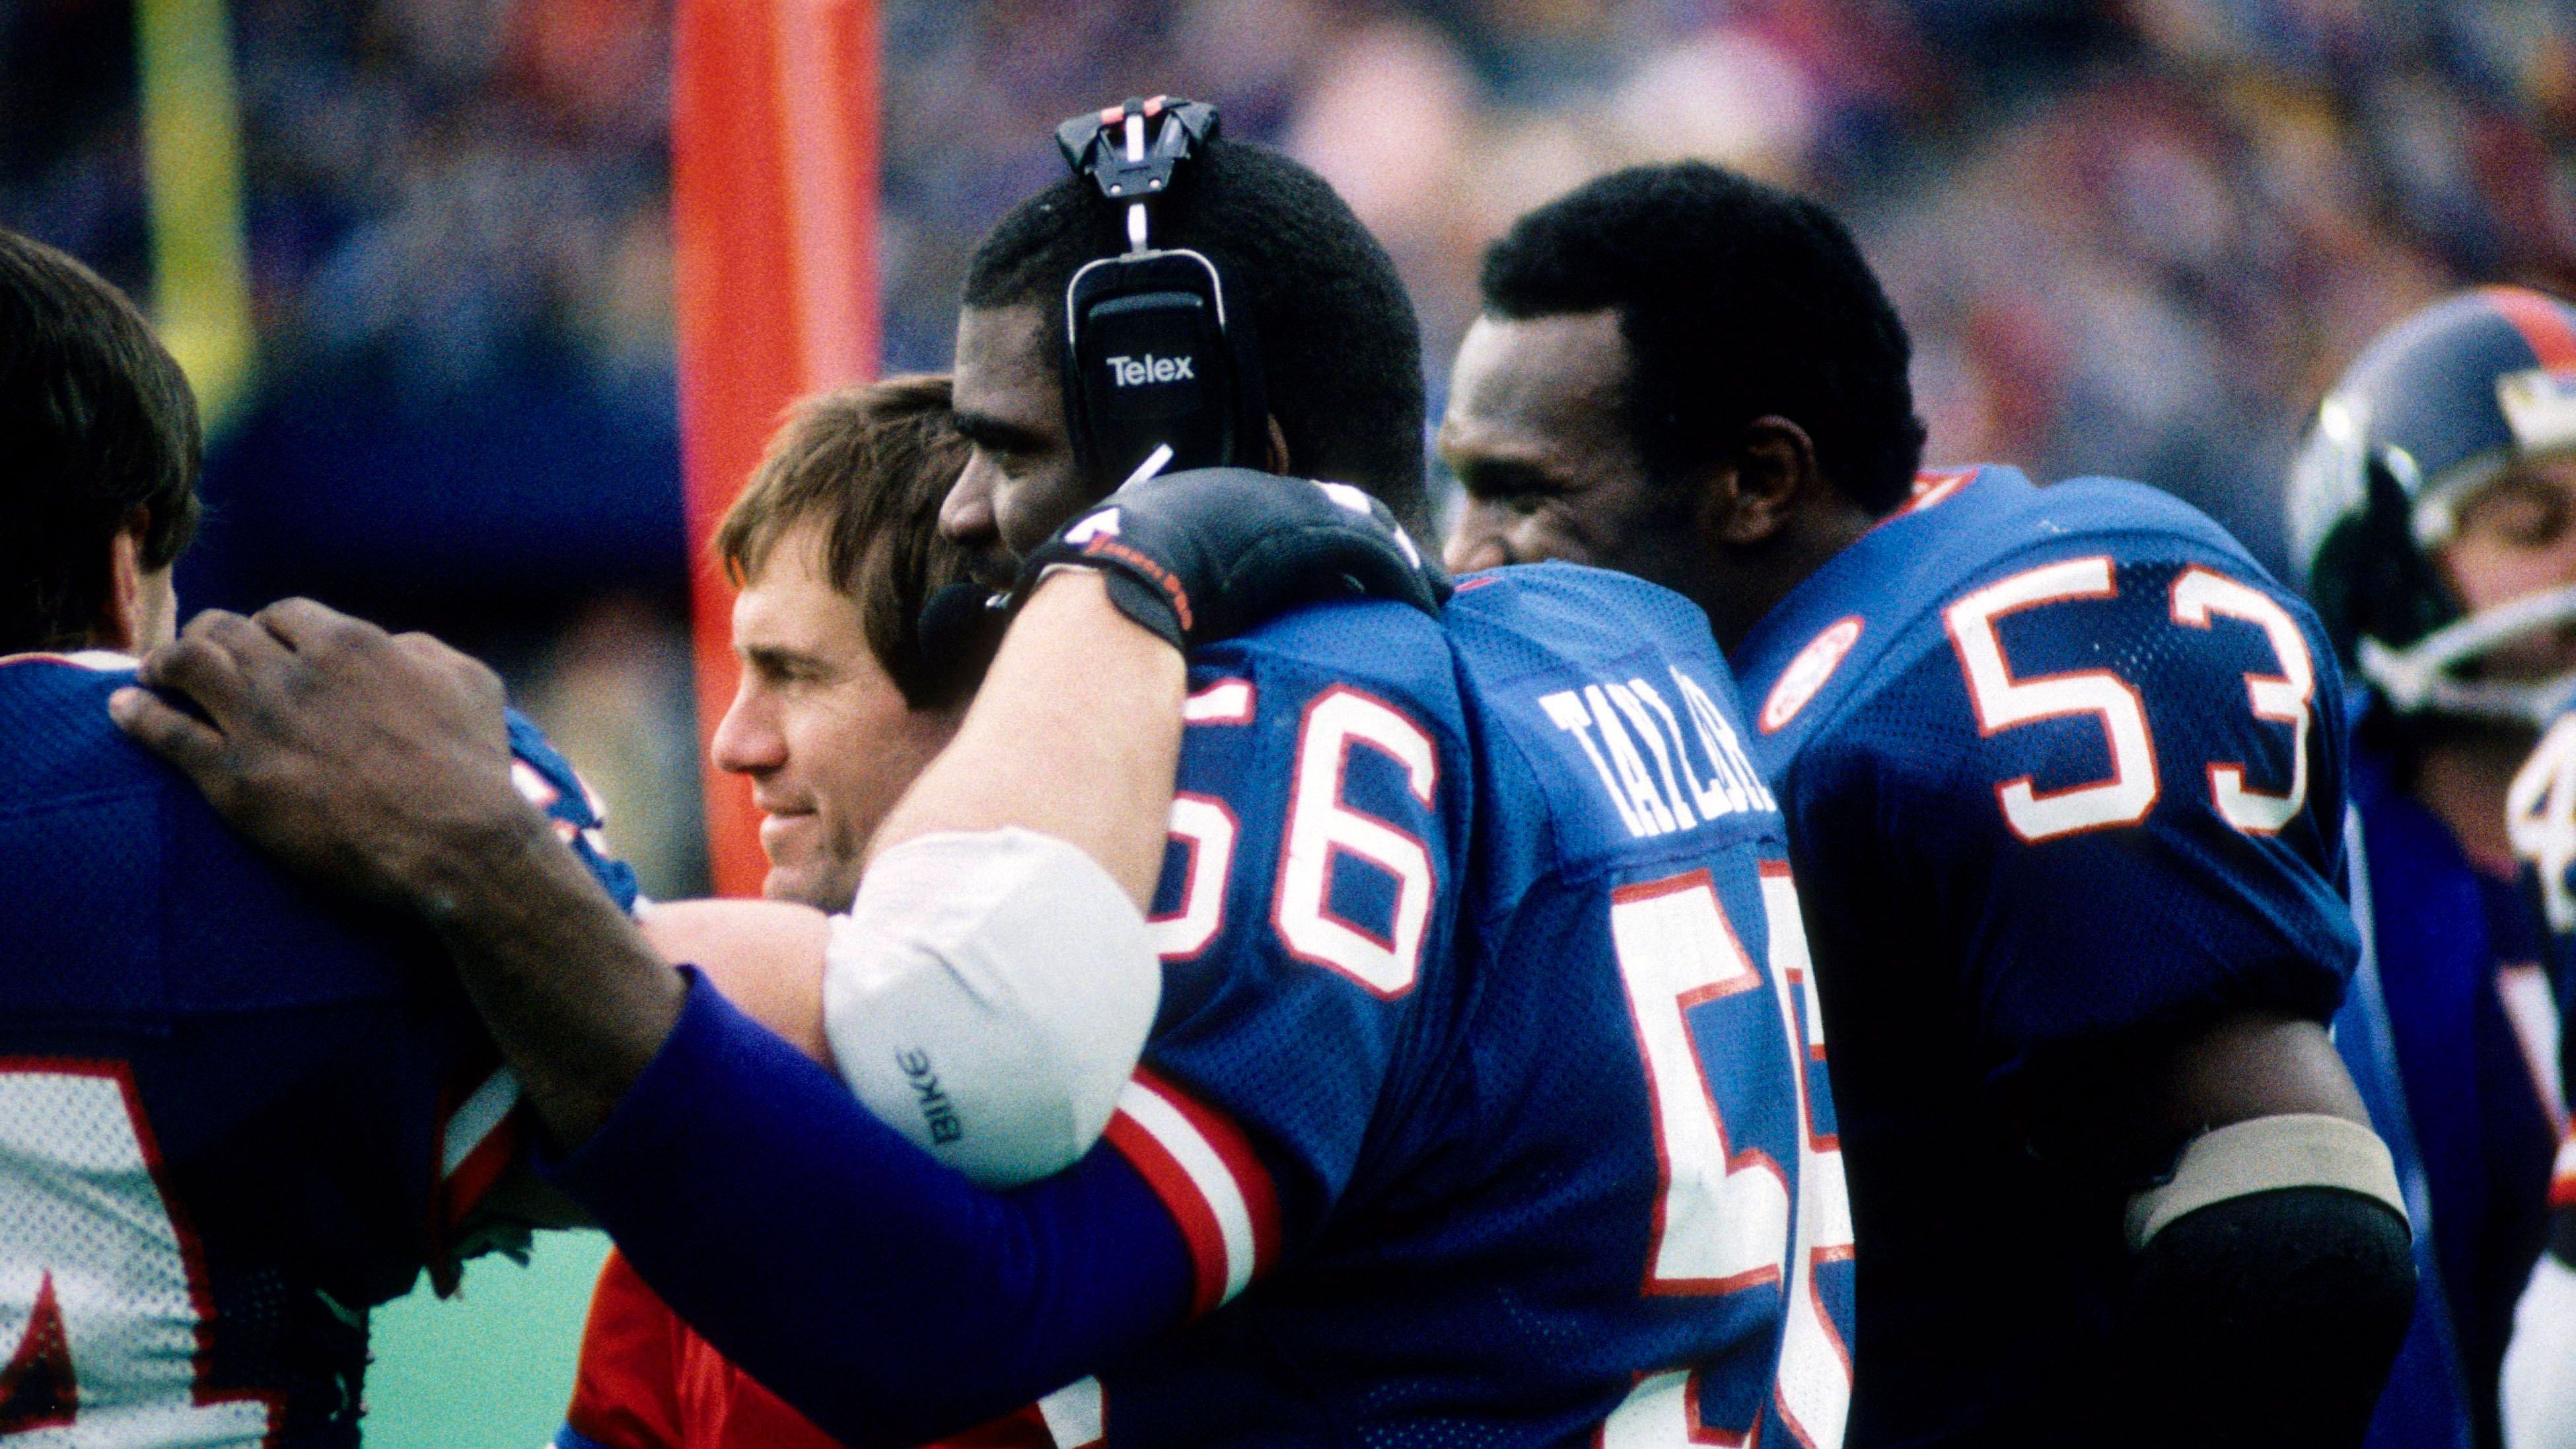 <strong>1985 - Defensive Coordinator New York Giants<br></strong>Schnell bekam Belichick mehr Verantwortung und übernahm für viele Jahre den Posten des Defensive Coordinators bei den New York Giants, mit denen er zwei Super Bowls gewinnen konnte.